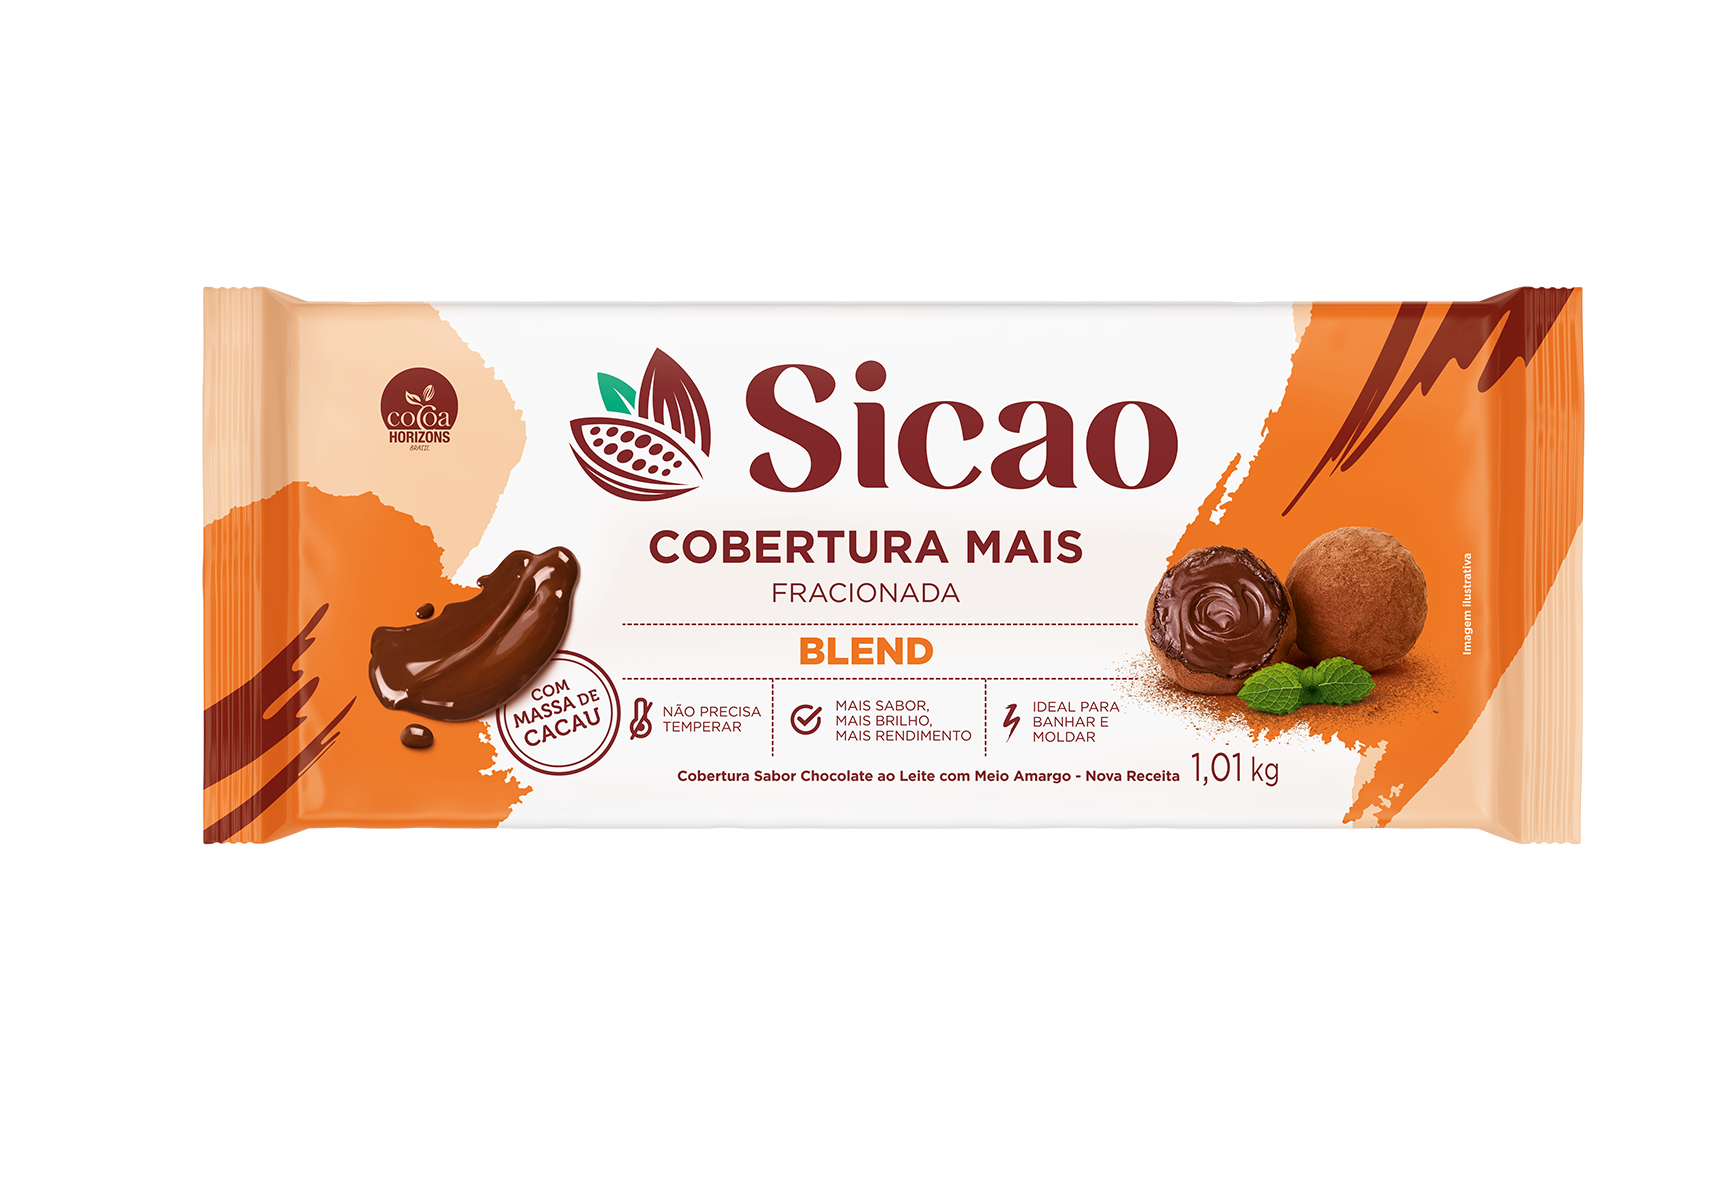 Cobertura Fracionada Sabor Chocolate Blend Sicao Mais - Barra 1,01 kg (1)